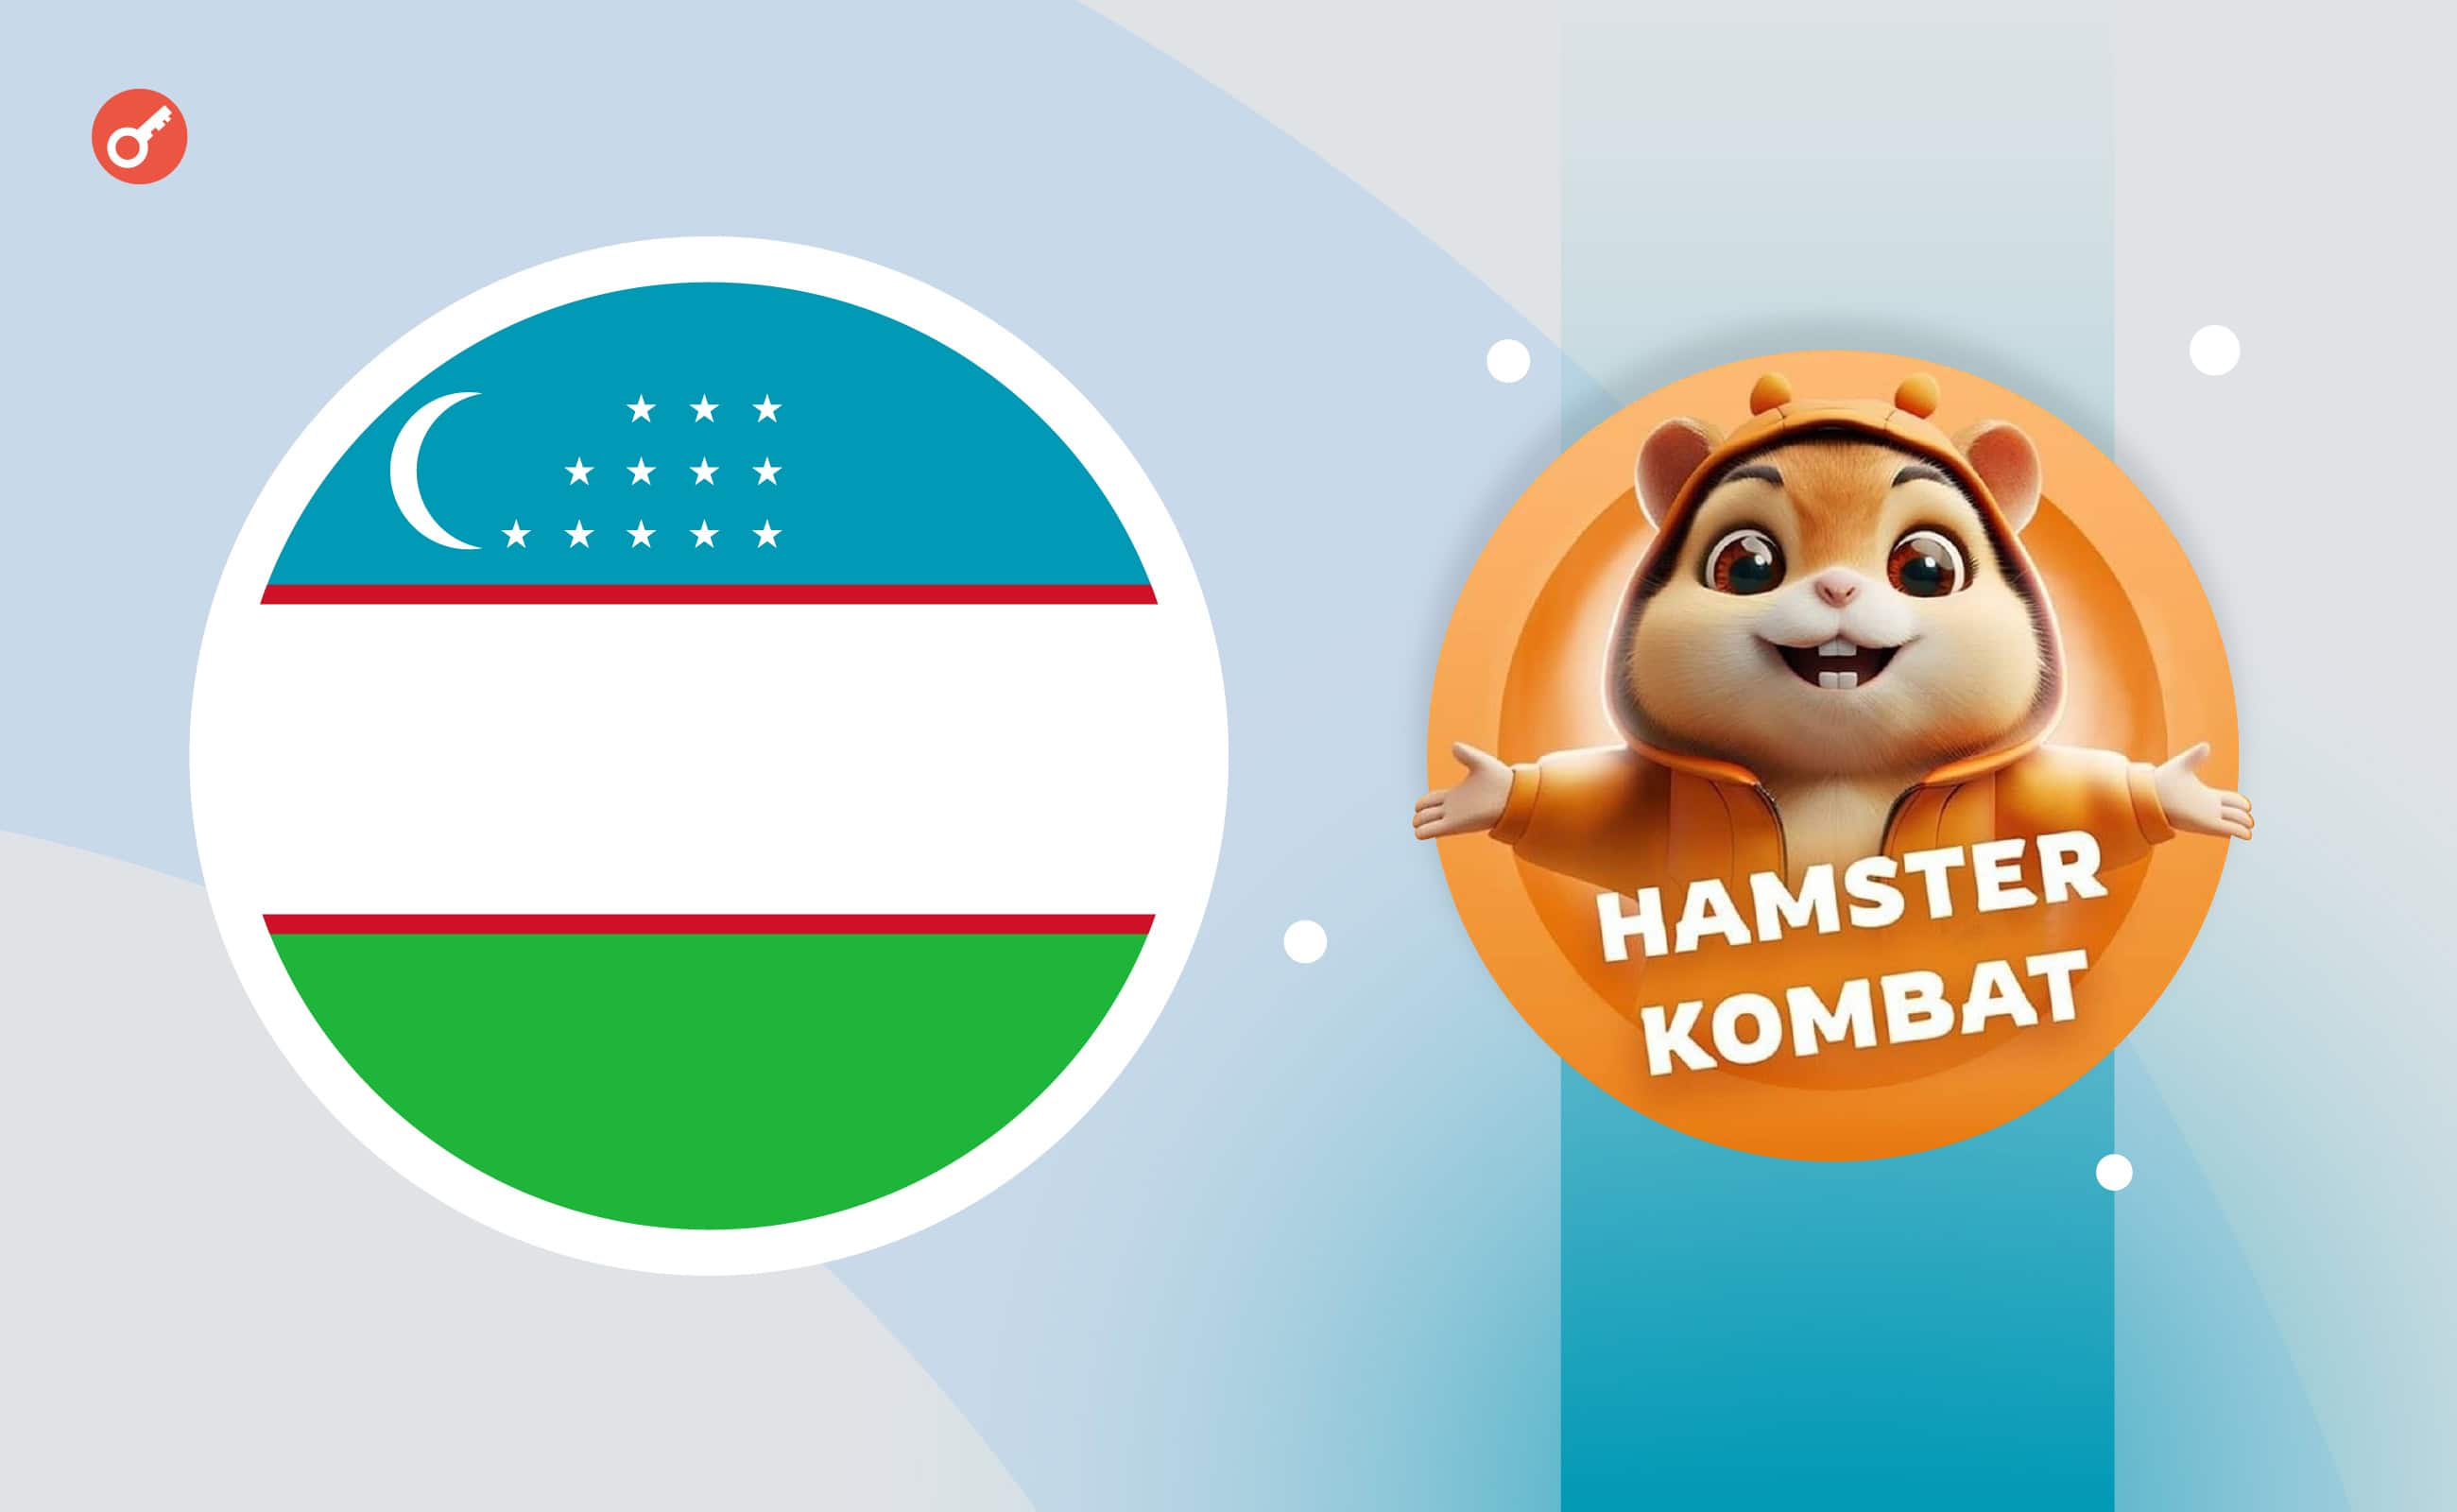 СМИ: в Узбекистане игроков Hamster Kombat будут сажать в тюрьму. Заглавный коллаж новости.